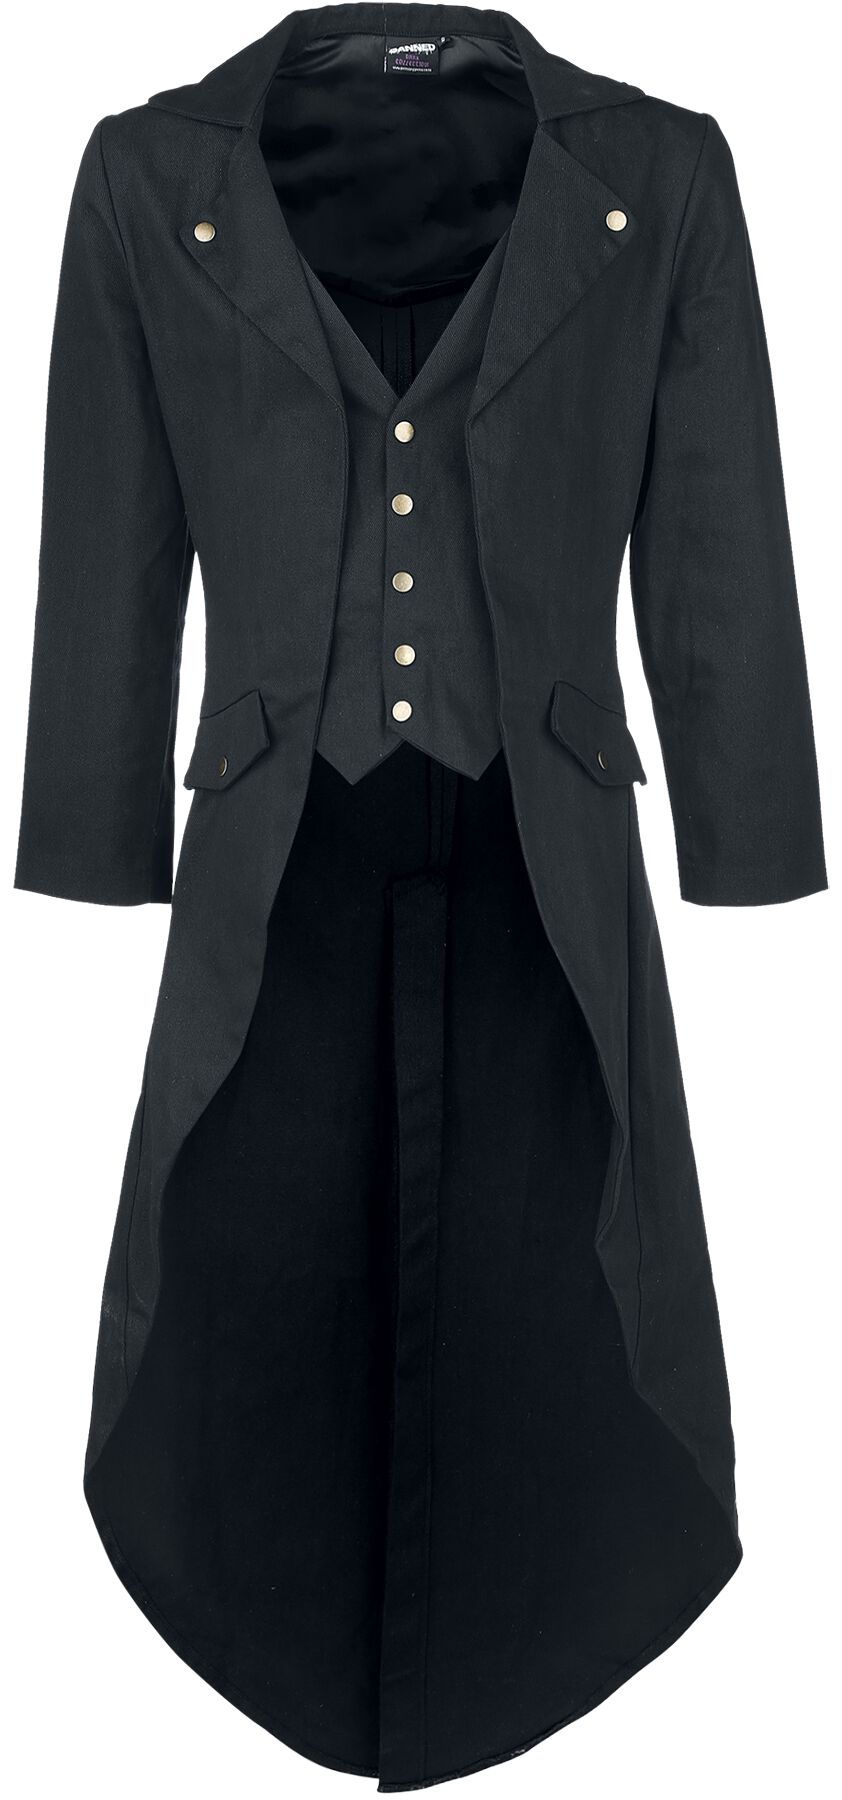 Banned Alternative - Gothic Militärmantel - Dovetail Coat - S bis 5XL - für Männer - Größe 4XL - schwarz von Banned Alternative